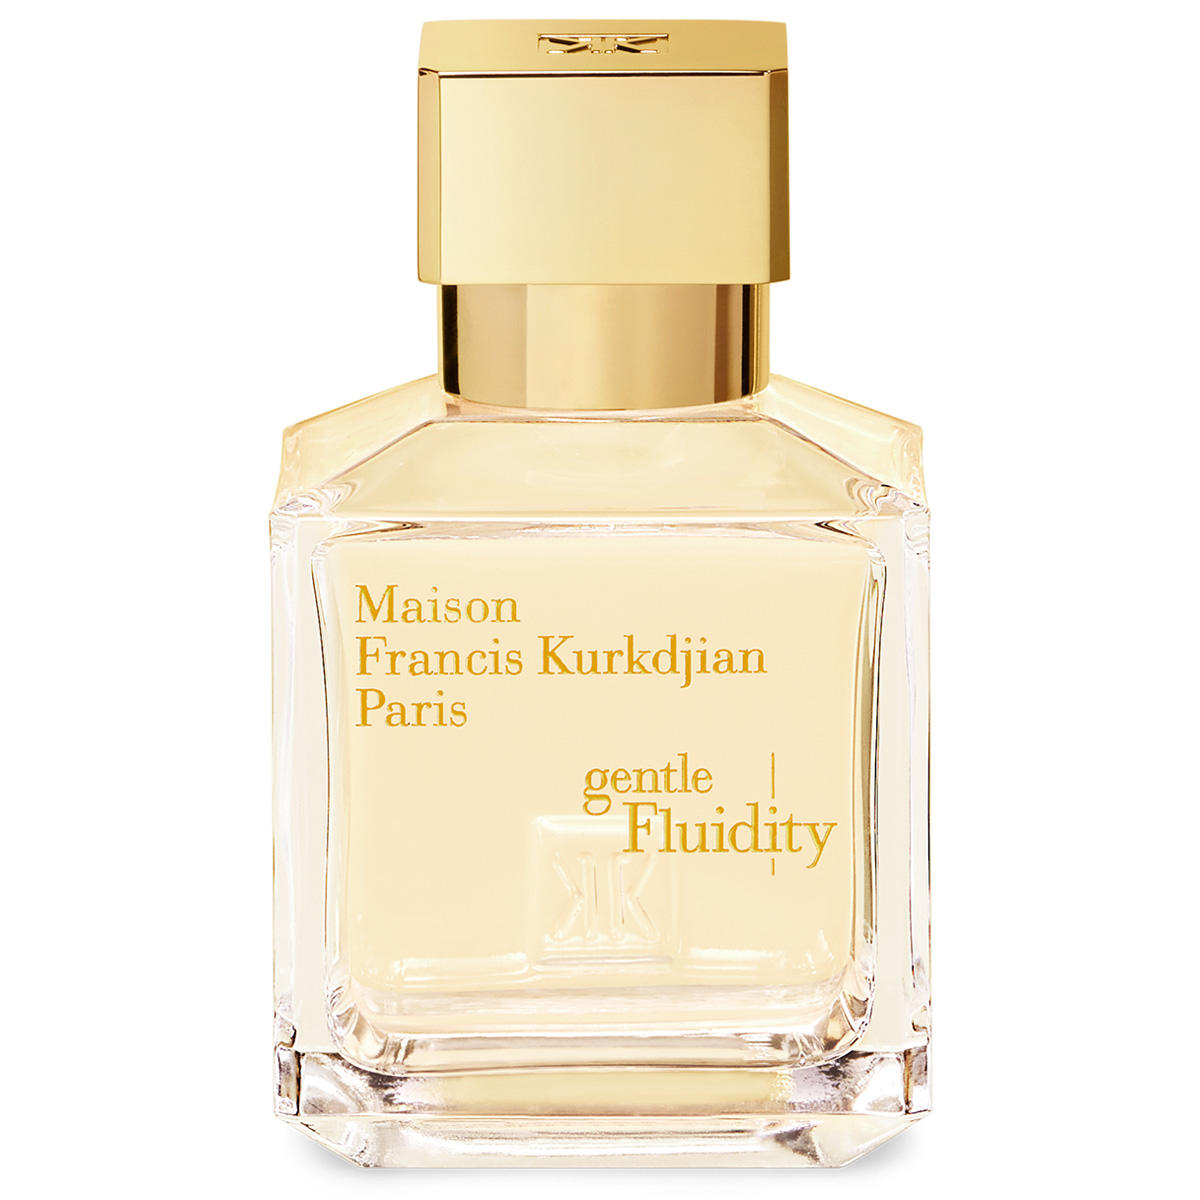 Maison Francis Kurkdjian Paris gentle Fluidity Gold Eau de Parfum 70 ml - 1